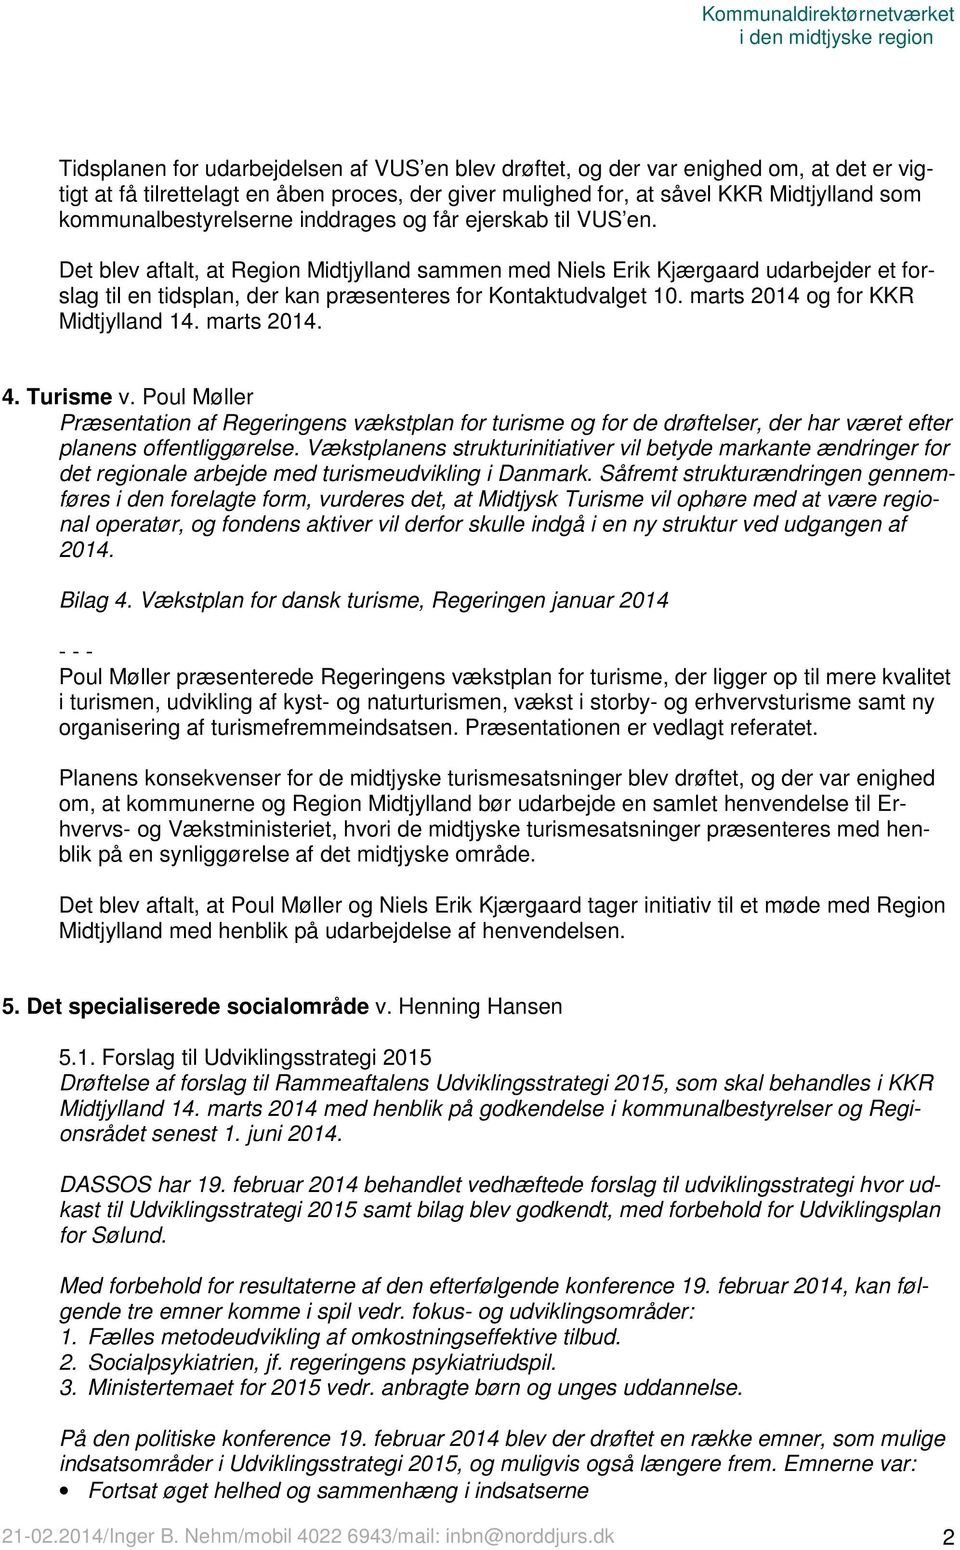 Det blev aftalt, at Region Midtjylland sammen med Niels Erik Kjærgaard udarbejder et forslag til en tidsplan, der kan præsenteres for Kontaktudvalget 10. marts 2014 og for KKR Midtjylland 14.